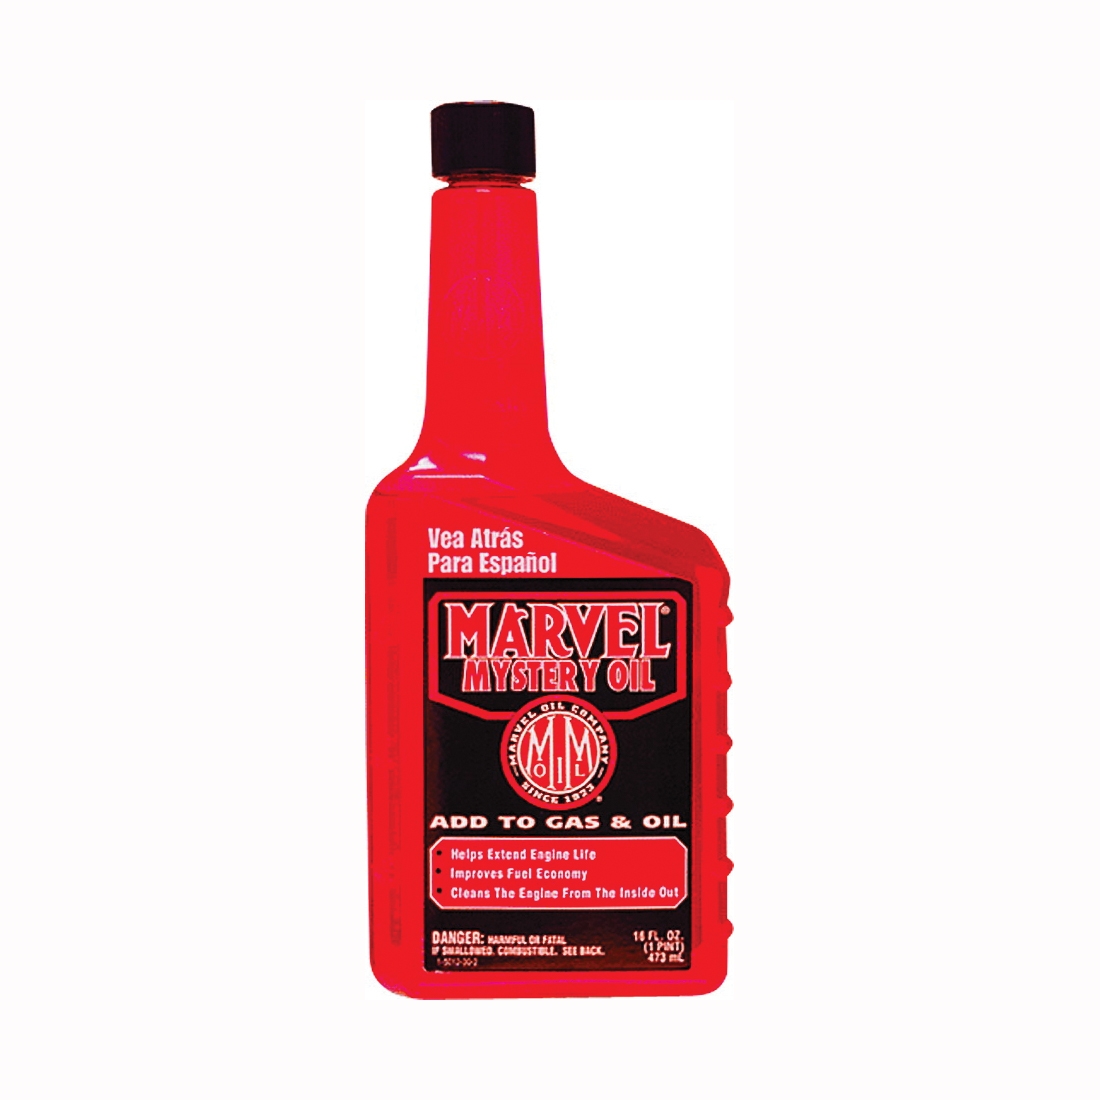 Marvel Mystery Oil MM12R Lubricant Oil, 16 oz Bottle - 1